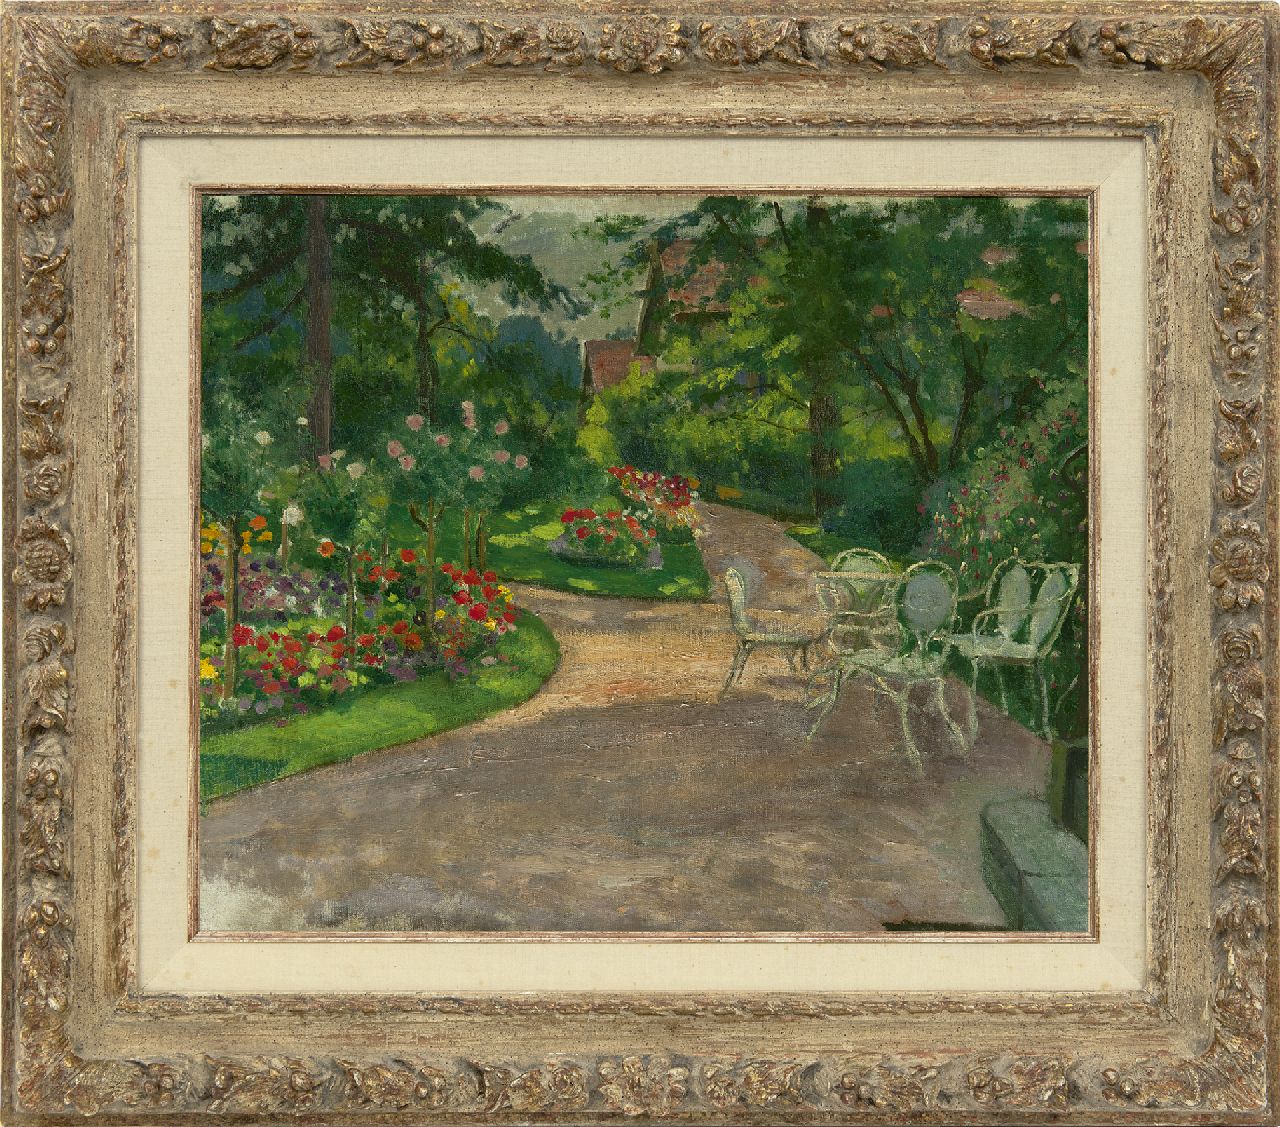 Sachsen M.M.A. von | Mathilde Marie Auguste von Sachsen, Tuin in de zomer, olieverf op doek 46,3 x 56,2 cm